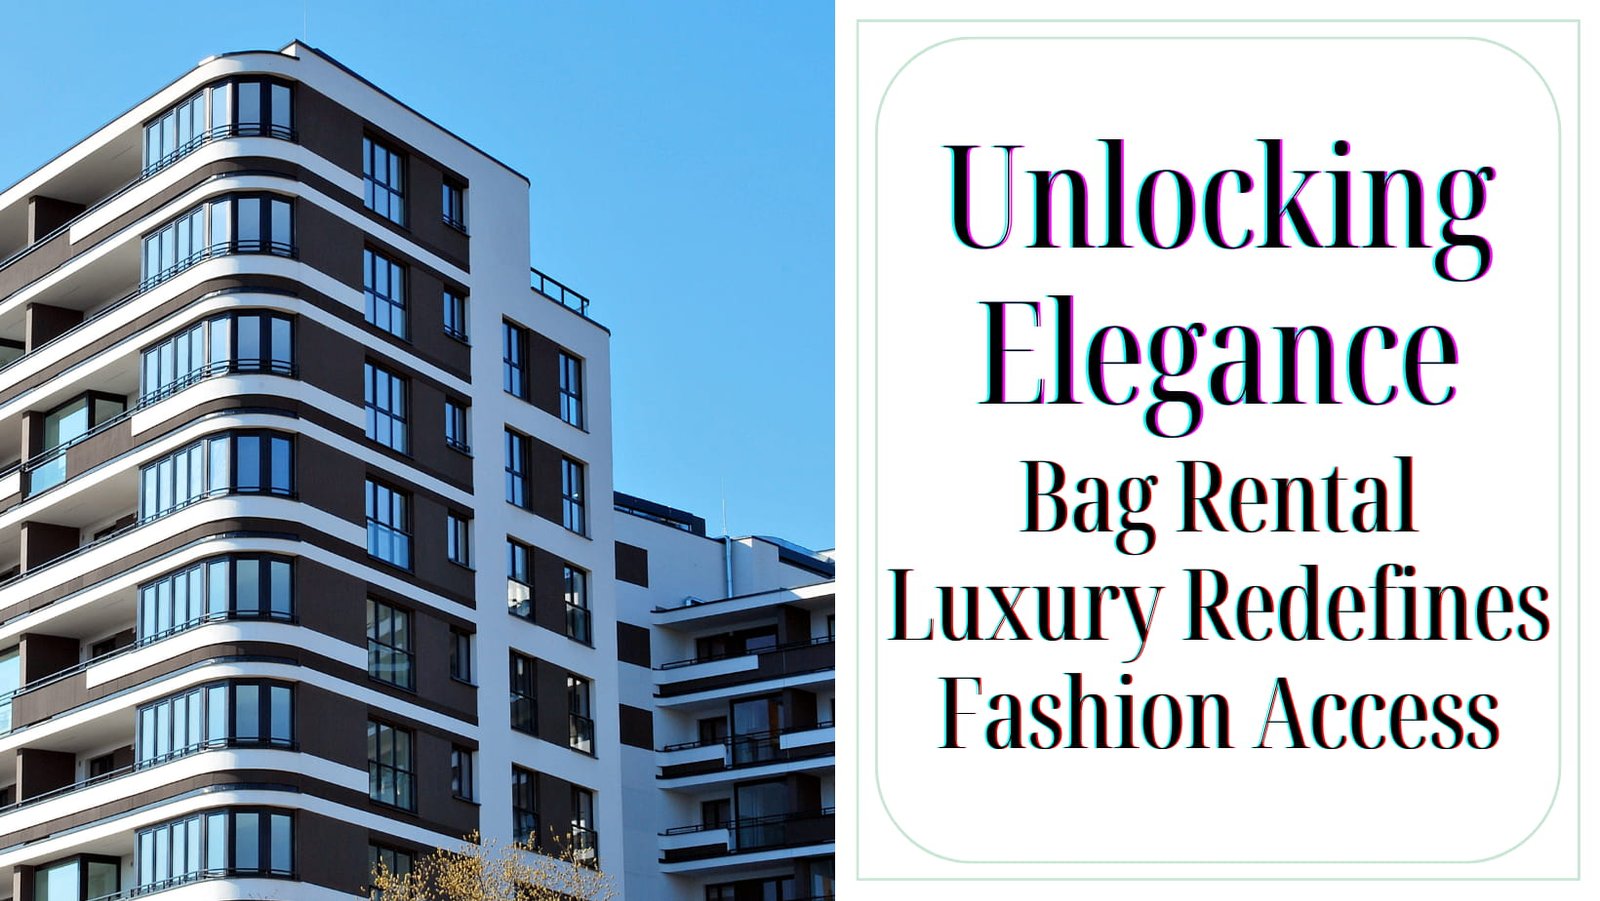 bag rental luxury